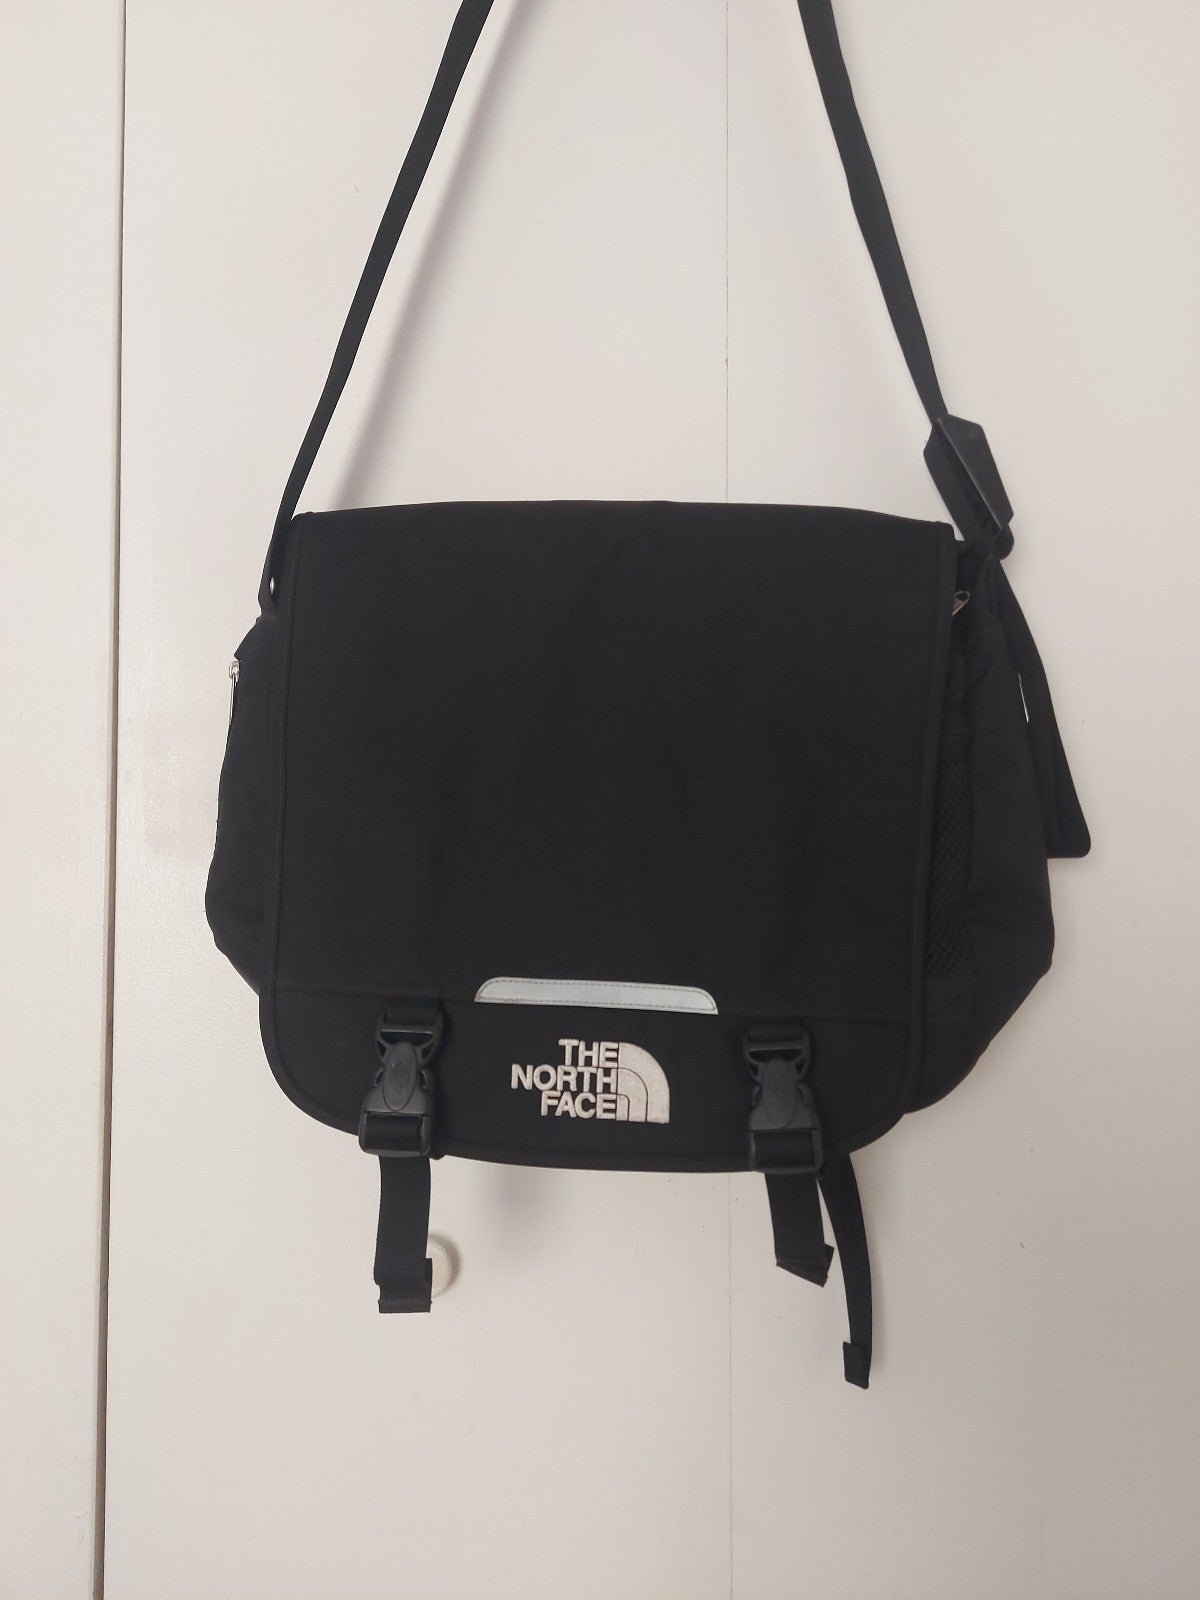 The North Face Messenger Shoulder Bag Laptop Case Adjustable 2V8x5hrzz